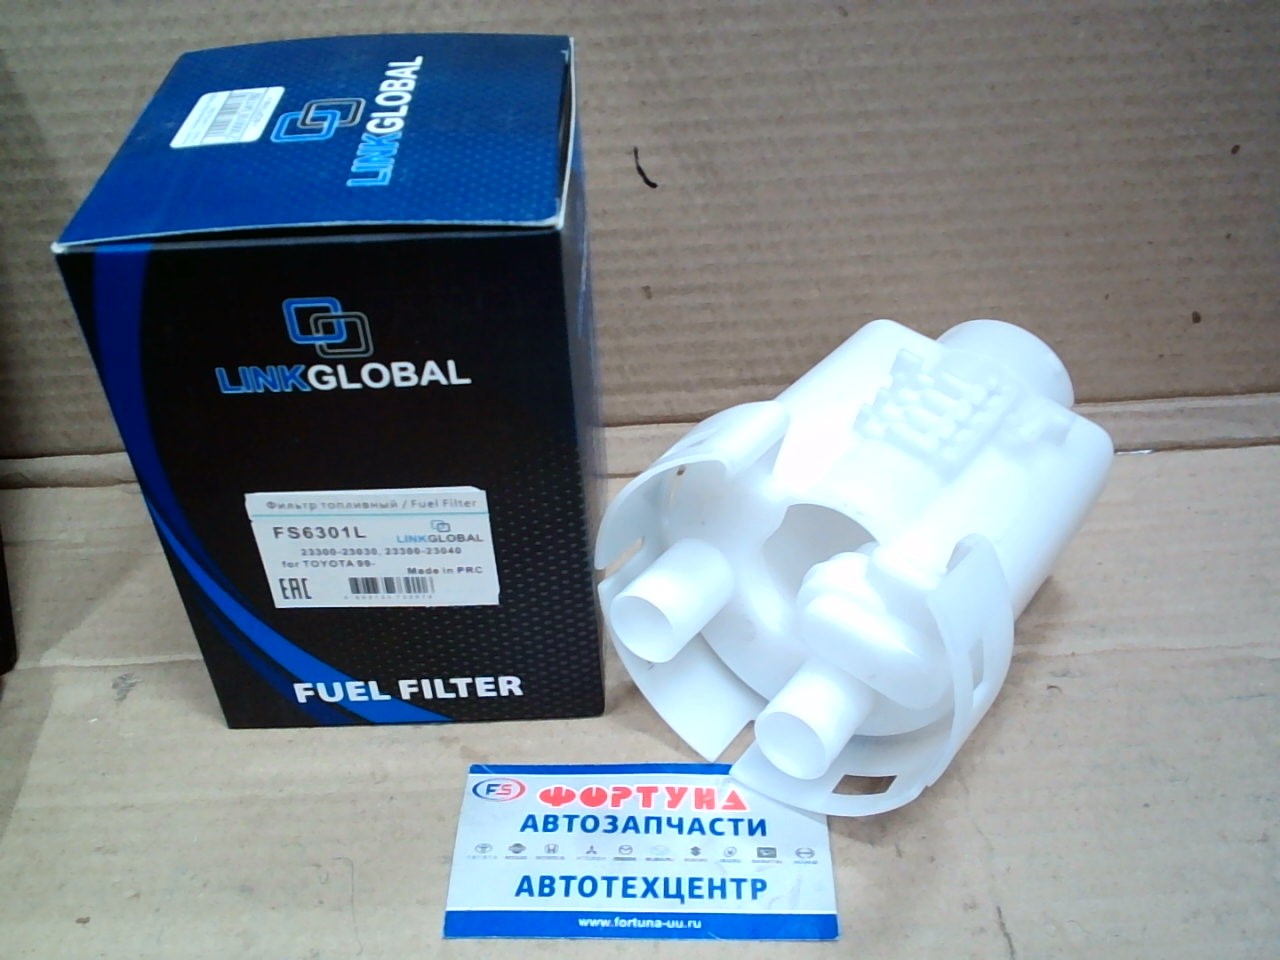 Фильтр Топливный в бак FS-6301 (FS6301L) LINKGLOBAL на  